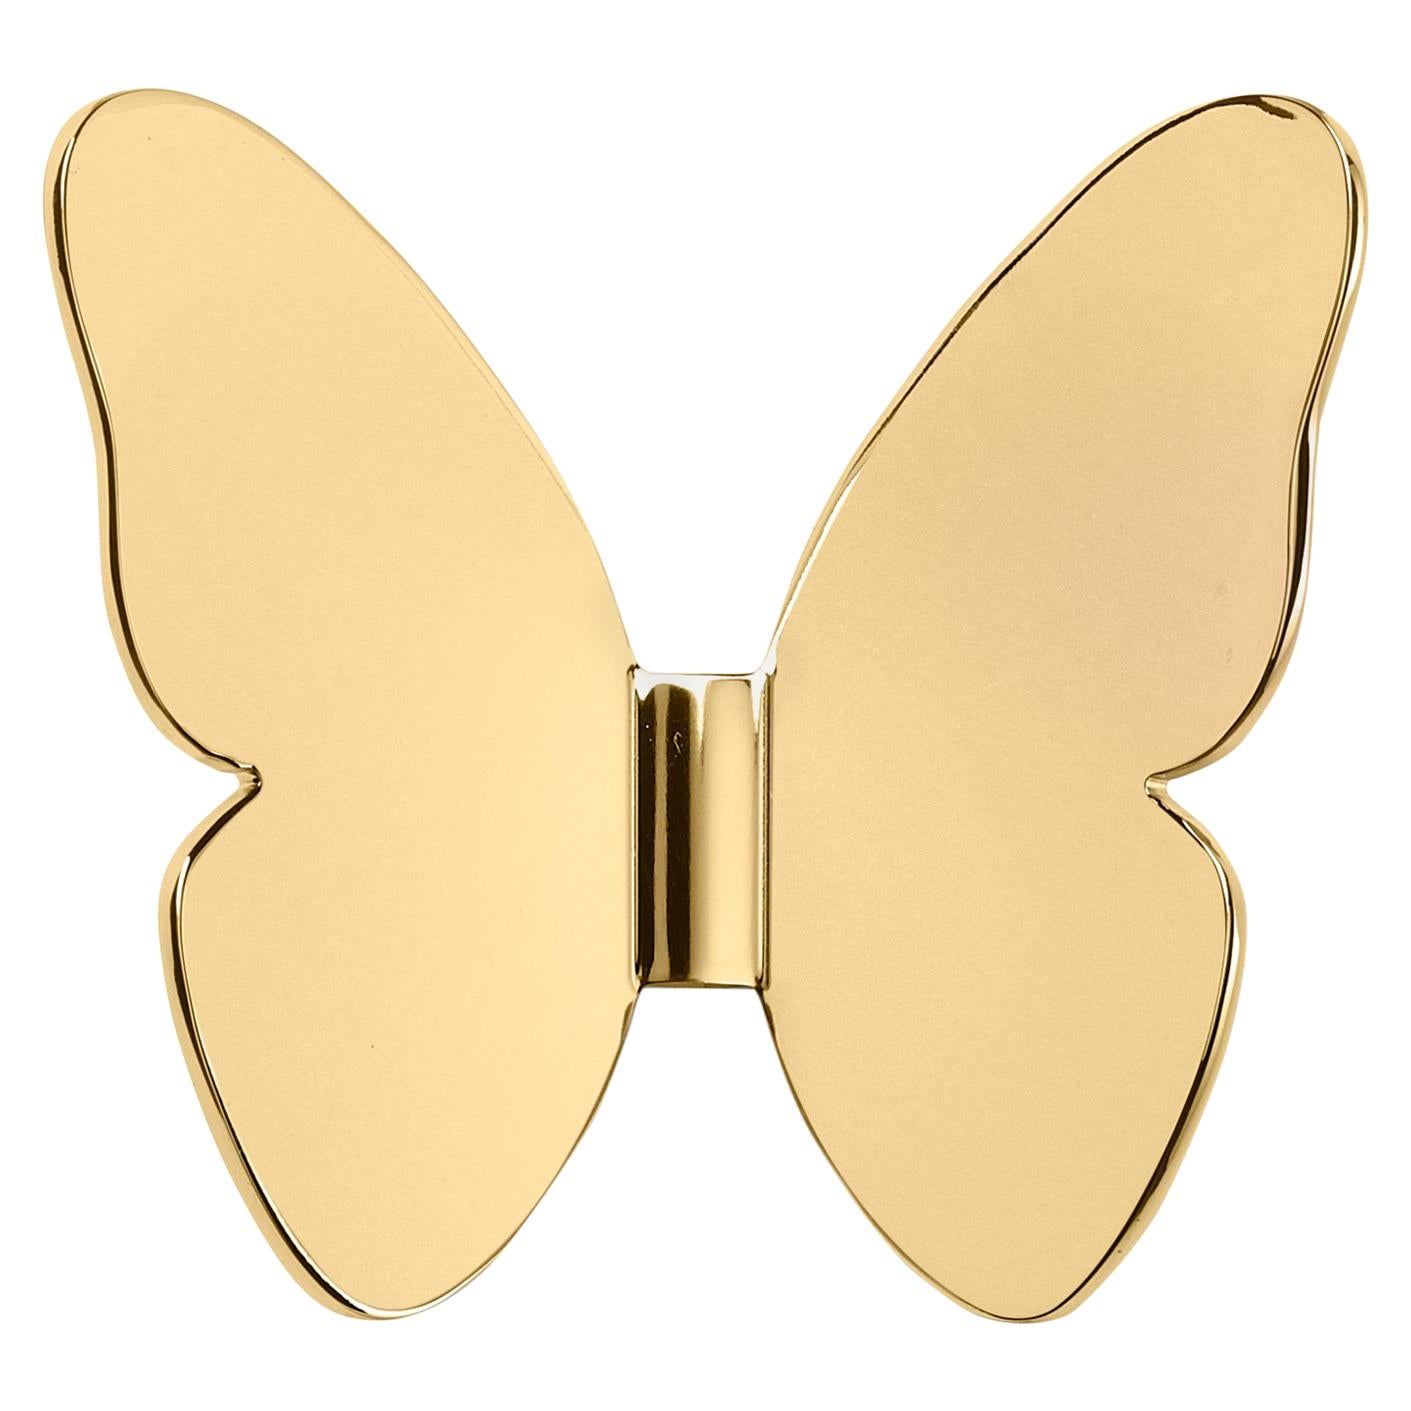 Ghidini 1961 Single Butterfly Coatrack in Gold by Richard Hutten